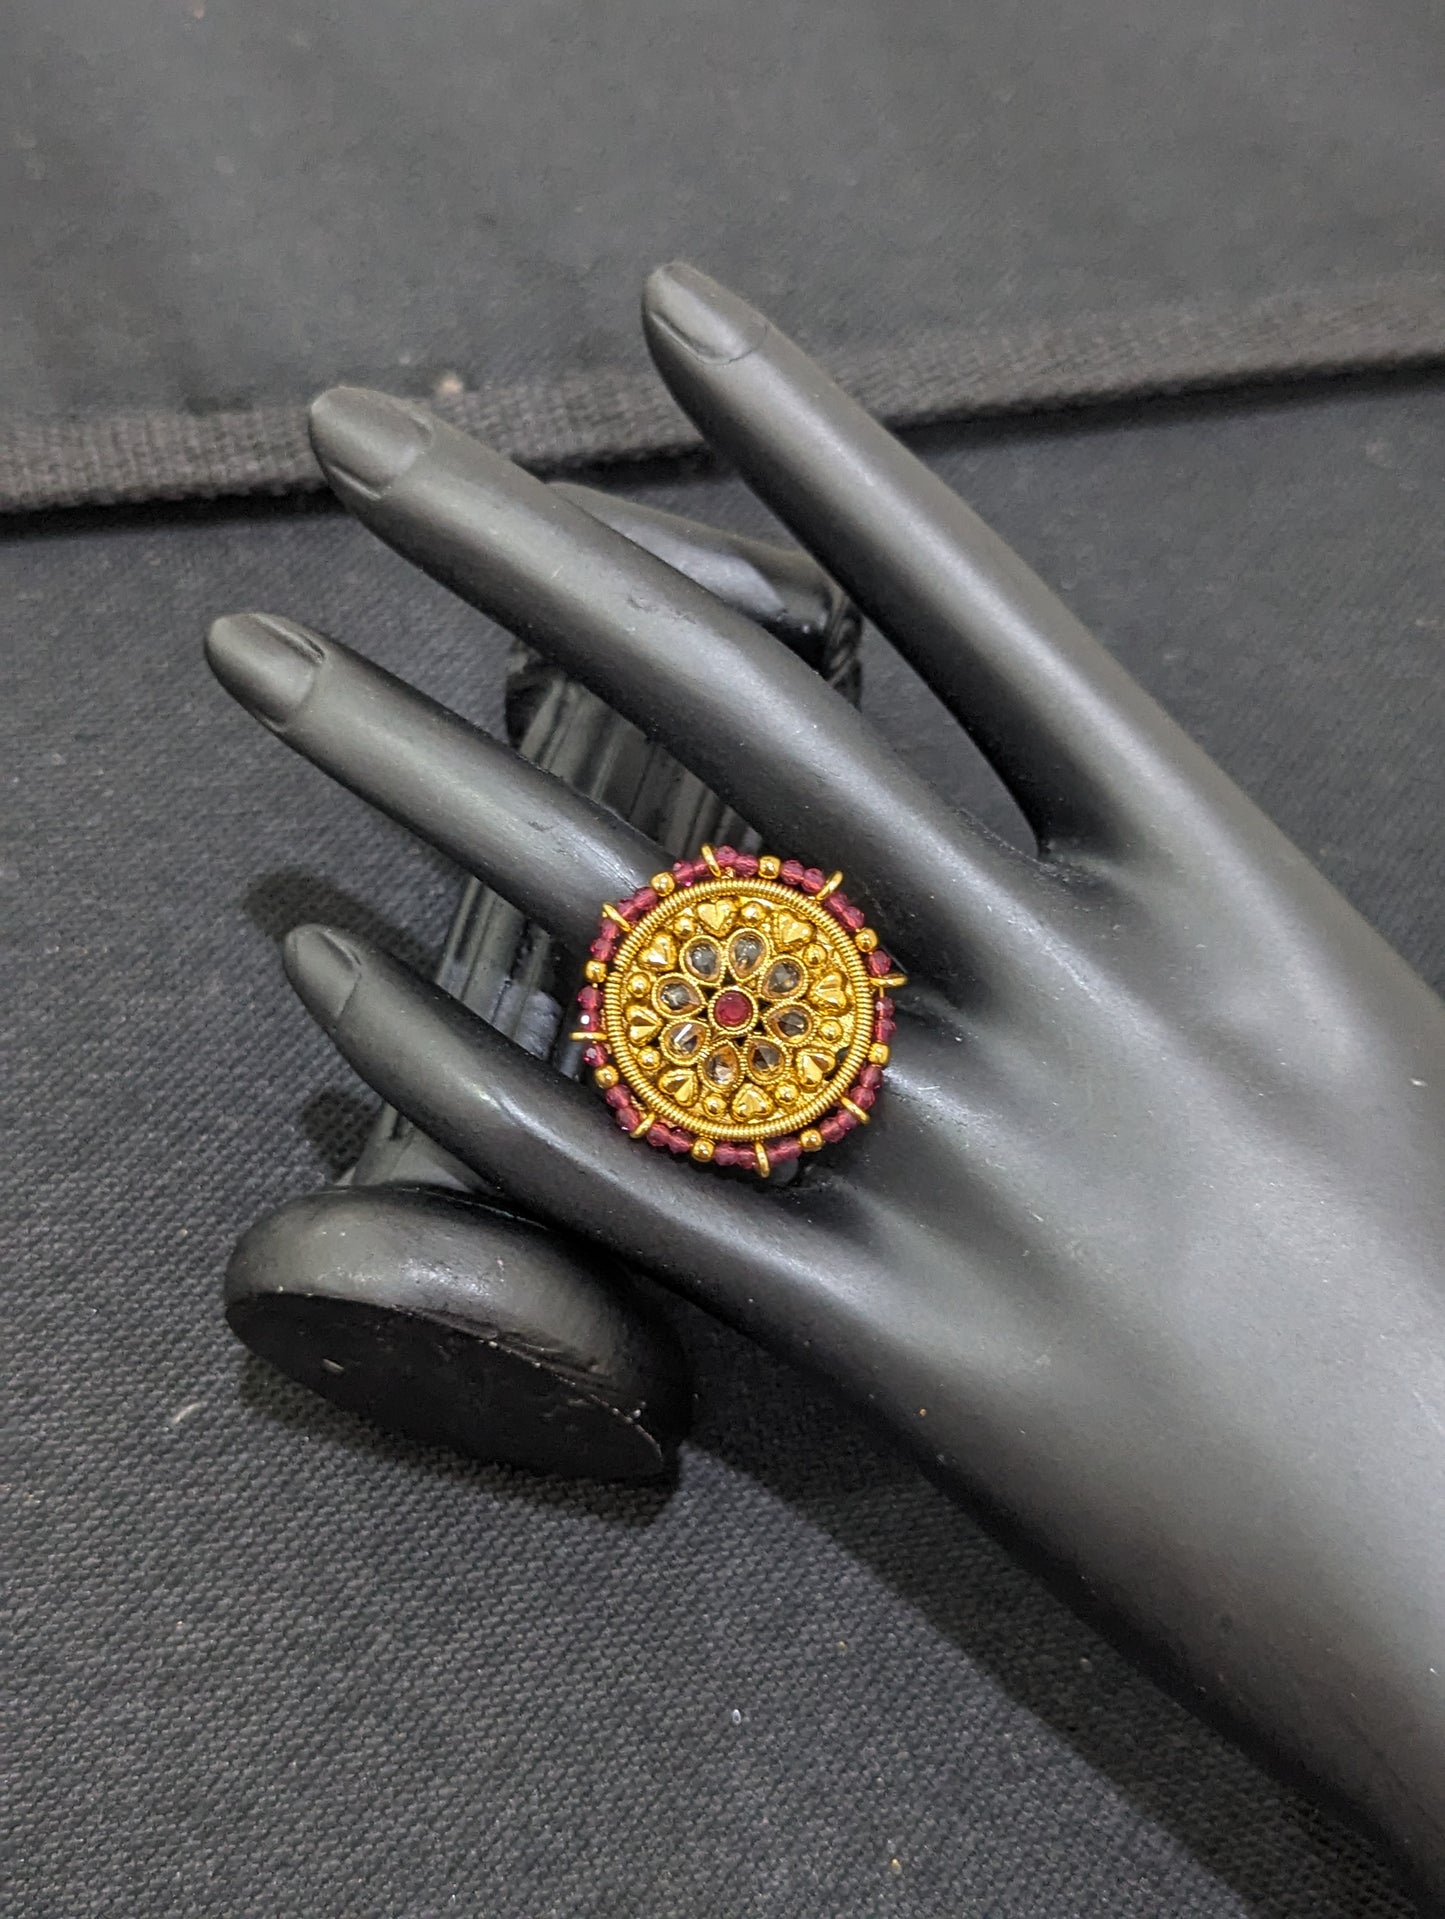 Polki stone Gold plated Flower Finger rings